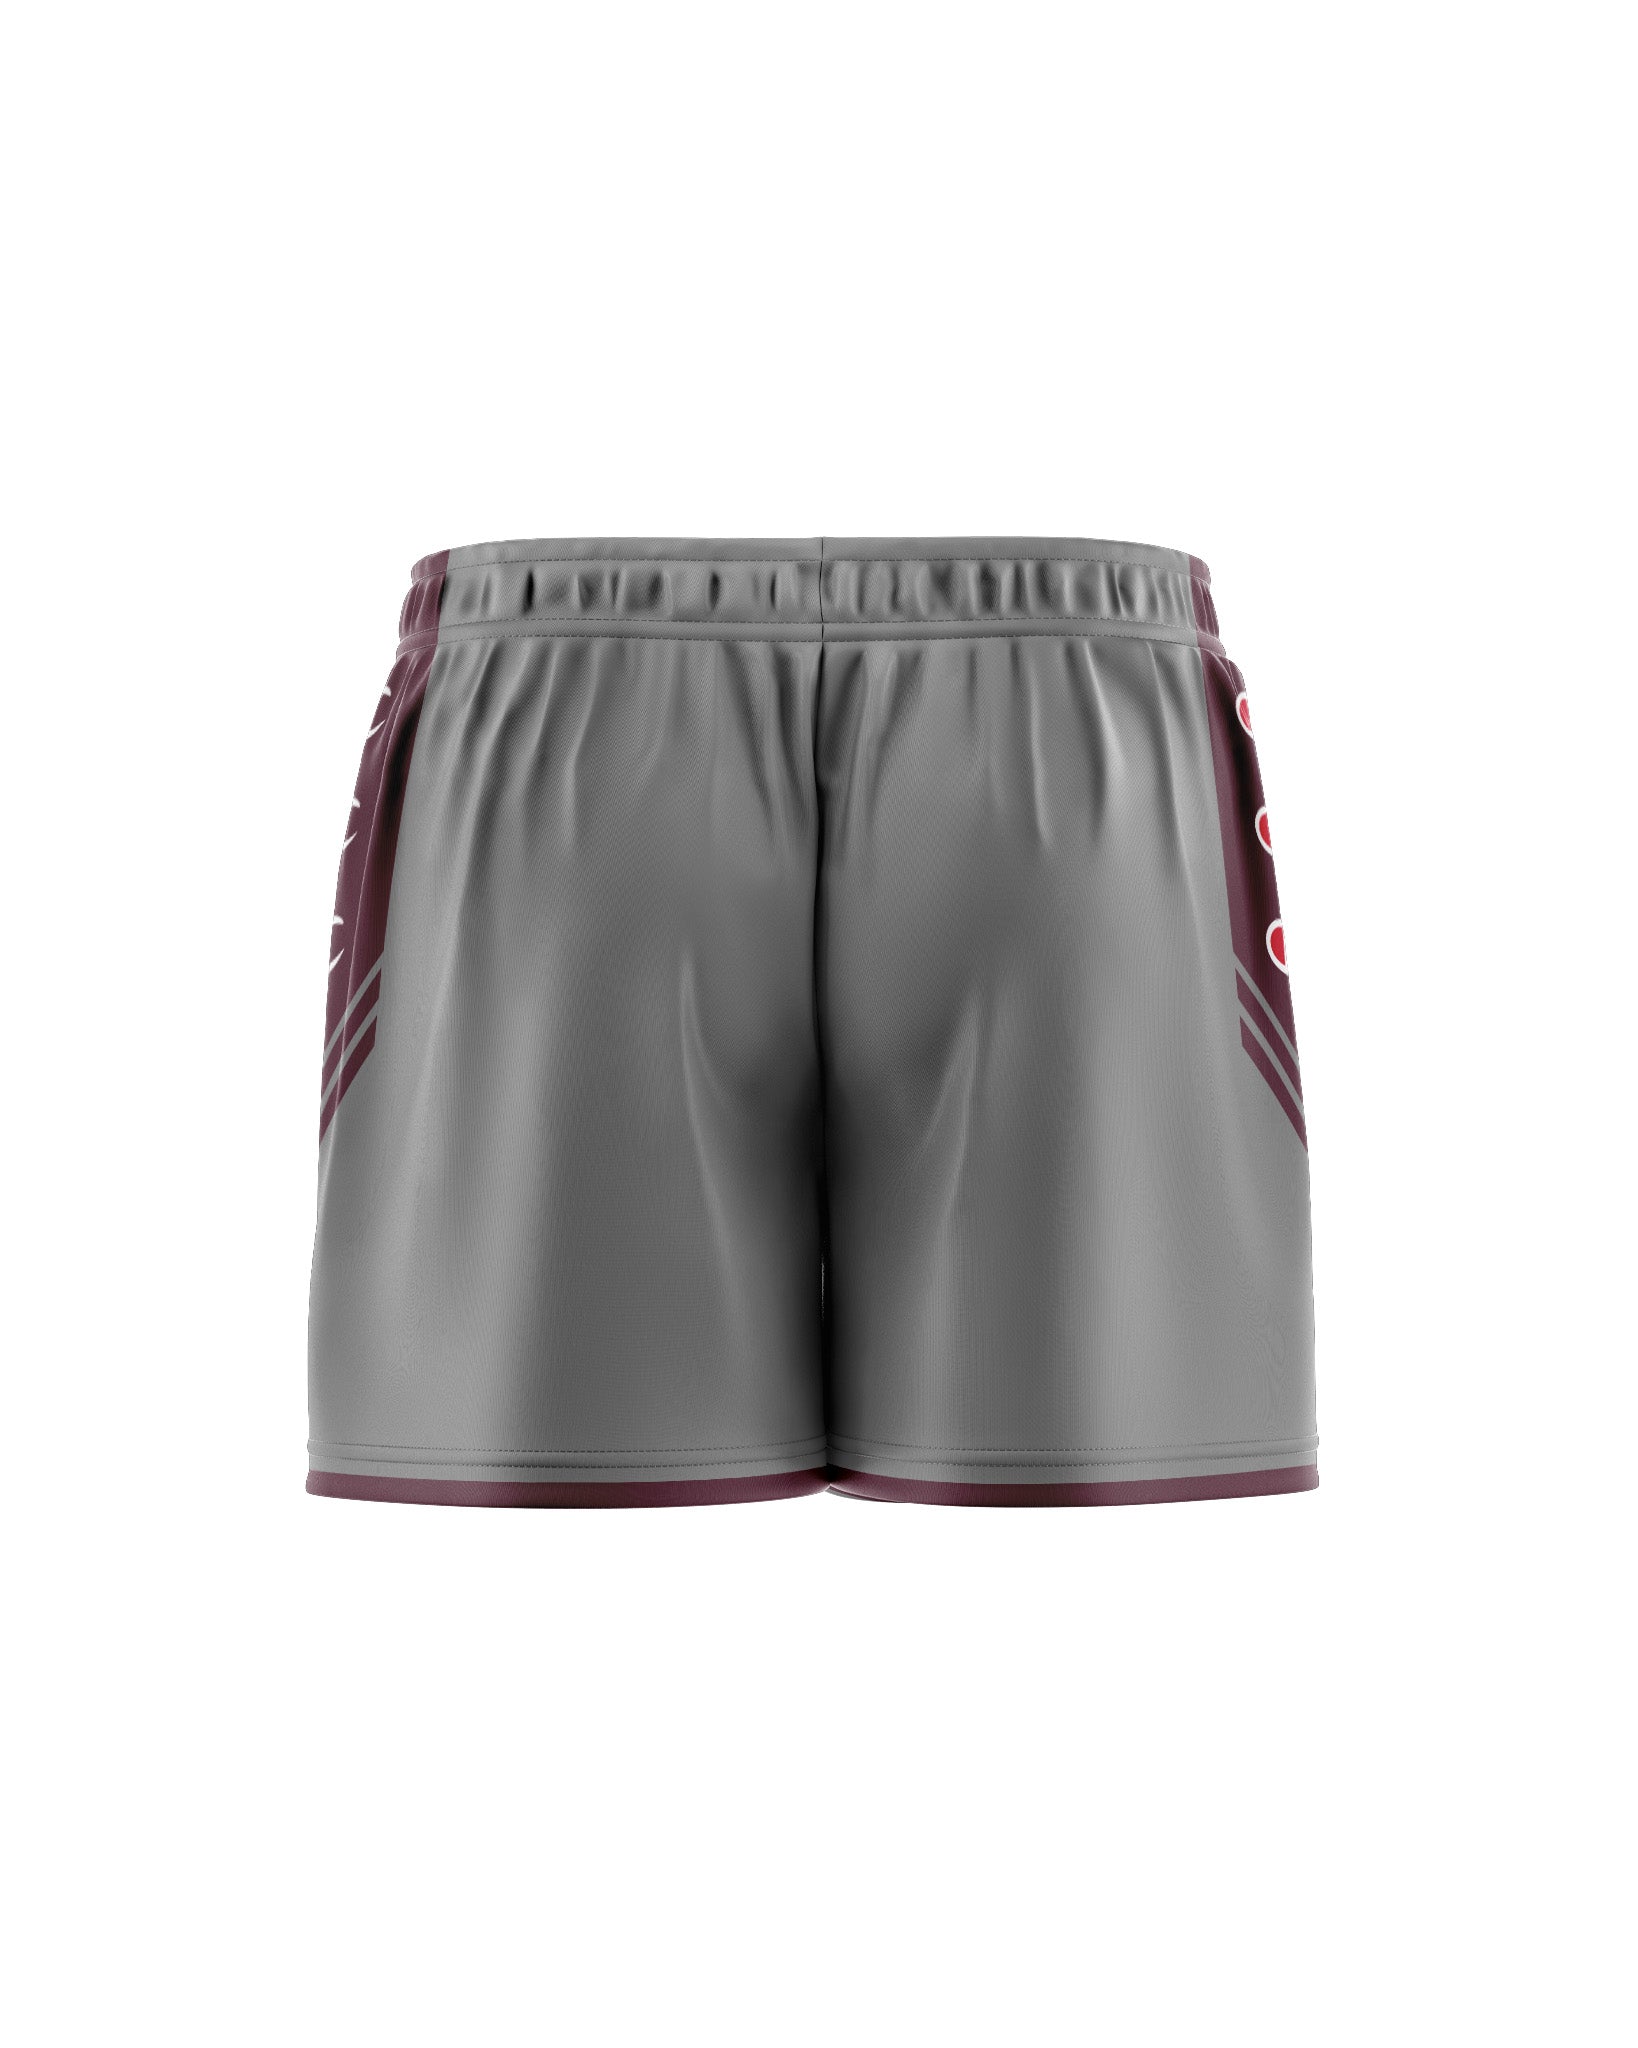 Custom women's soccer shorts, personalized teamwear